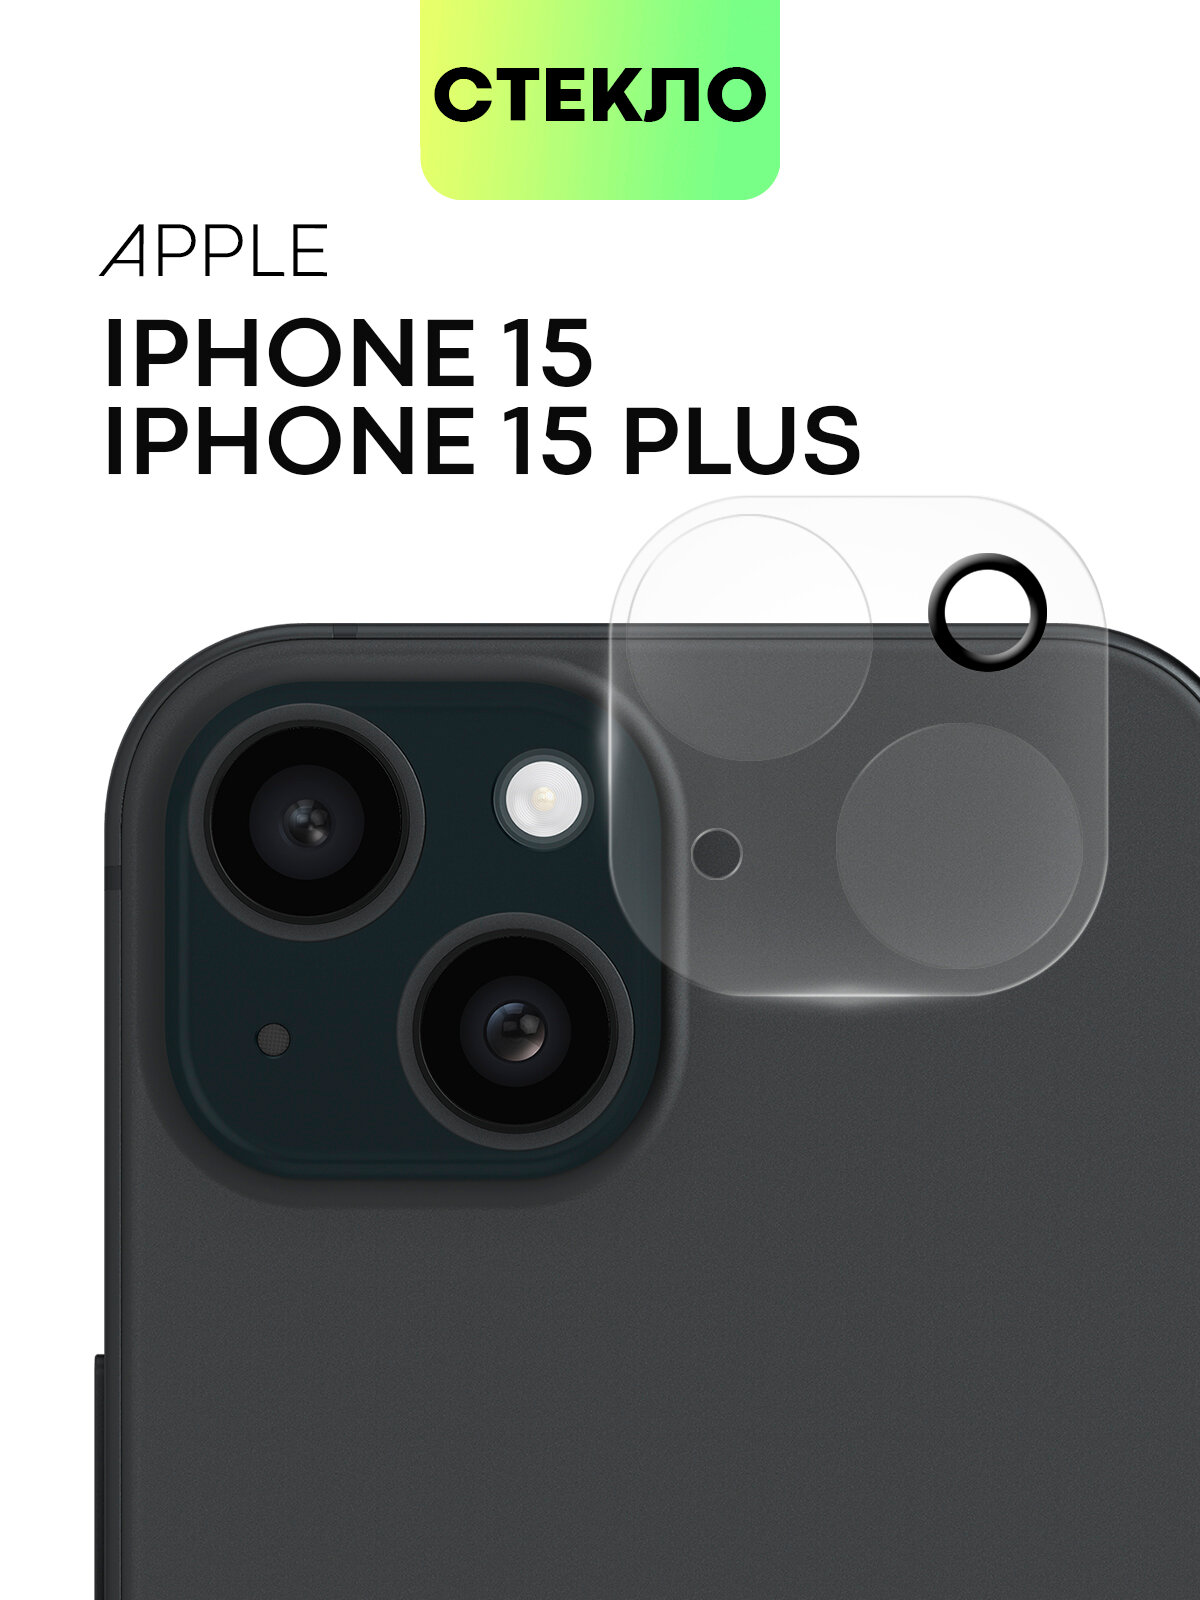 Стекло на камеру телефона Apple iPhone 15 и 15 Plus (Эпл Айфон 15 и Айфон 15 Плюс,+), защитное стекло BROSCORP для защиты модуля камер, прозрачное